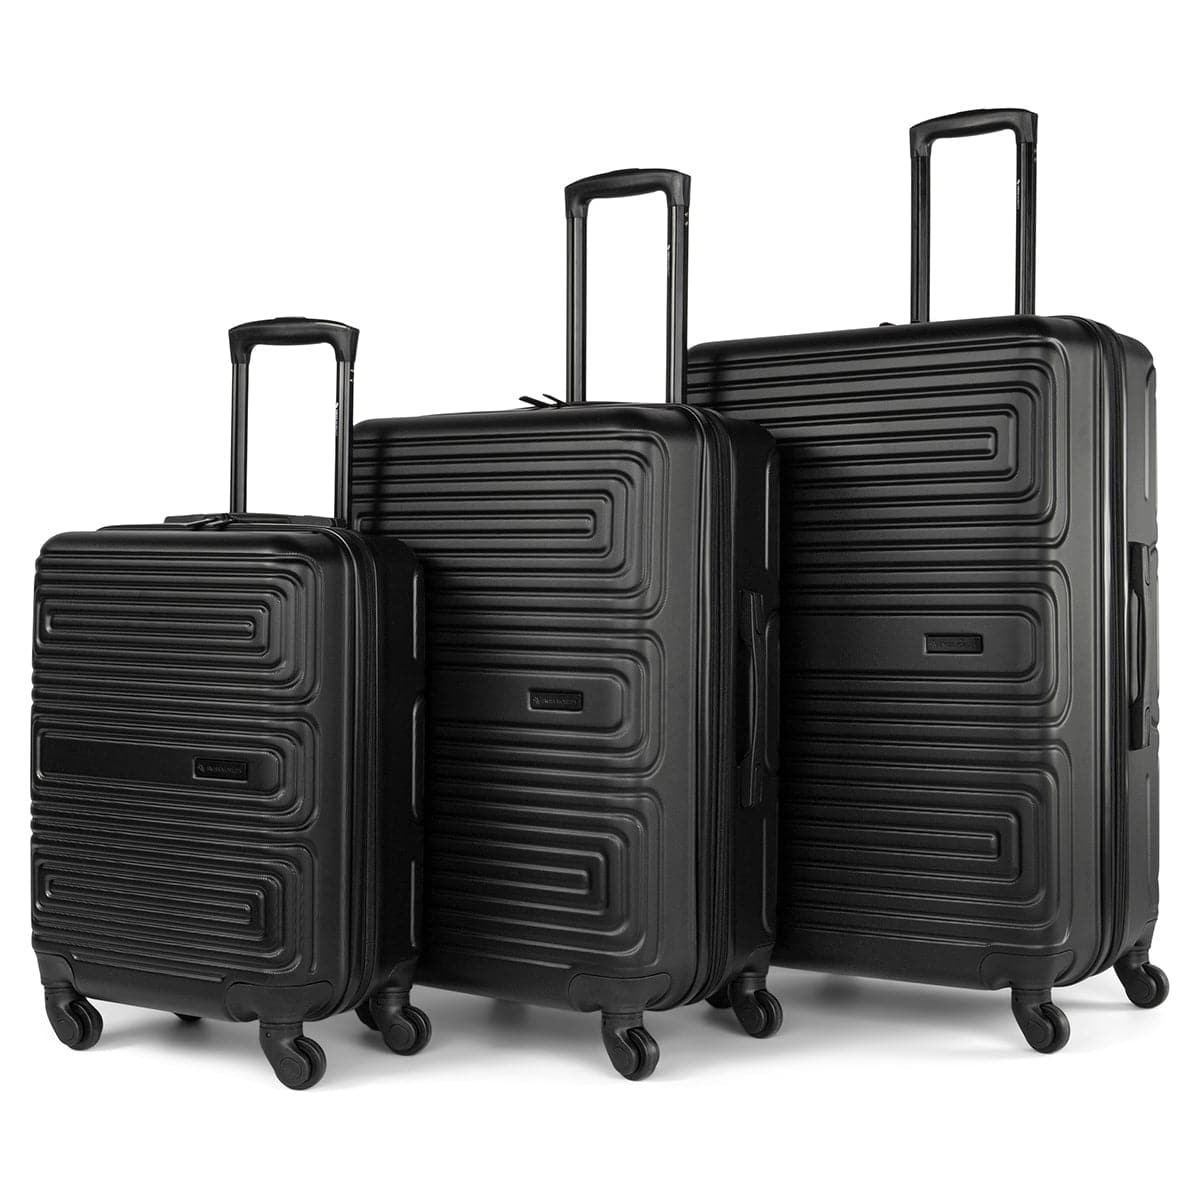 Swiss Mobility SFO 3 Piece Luggage Set